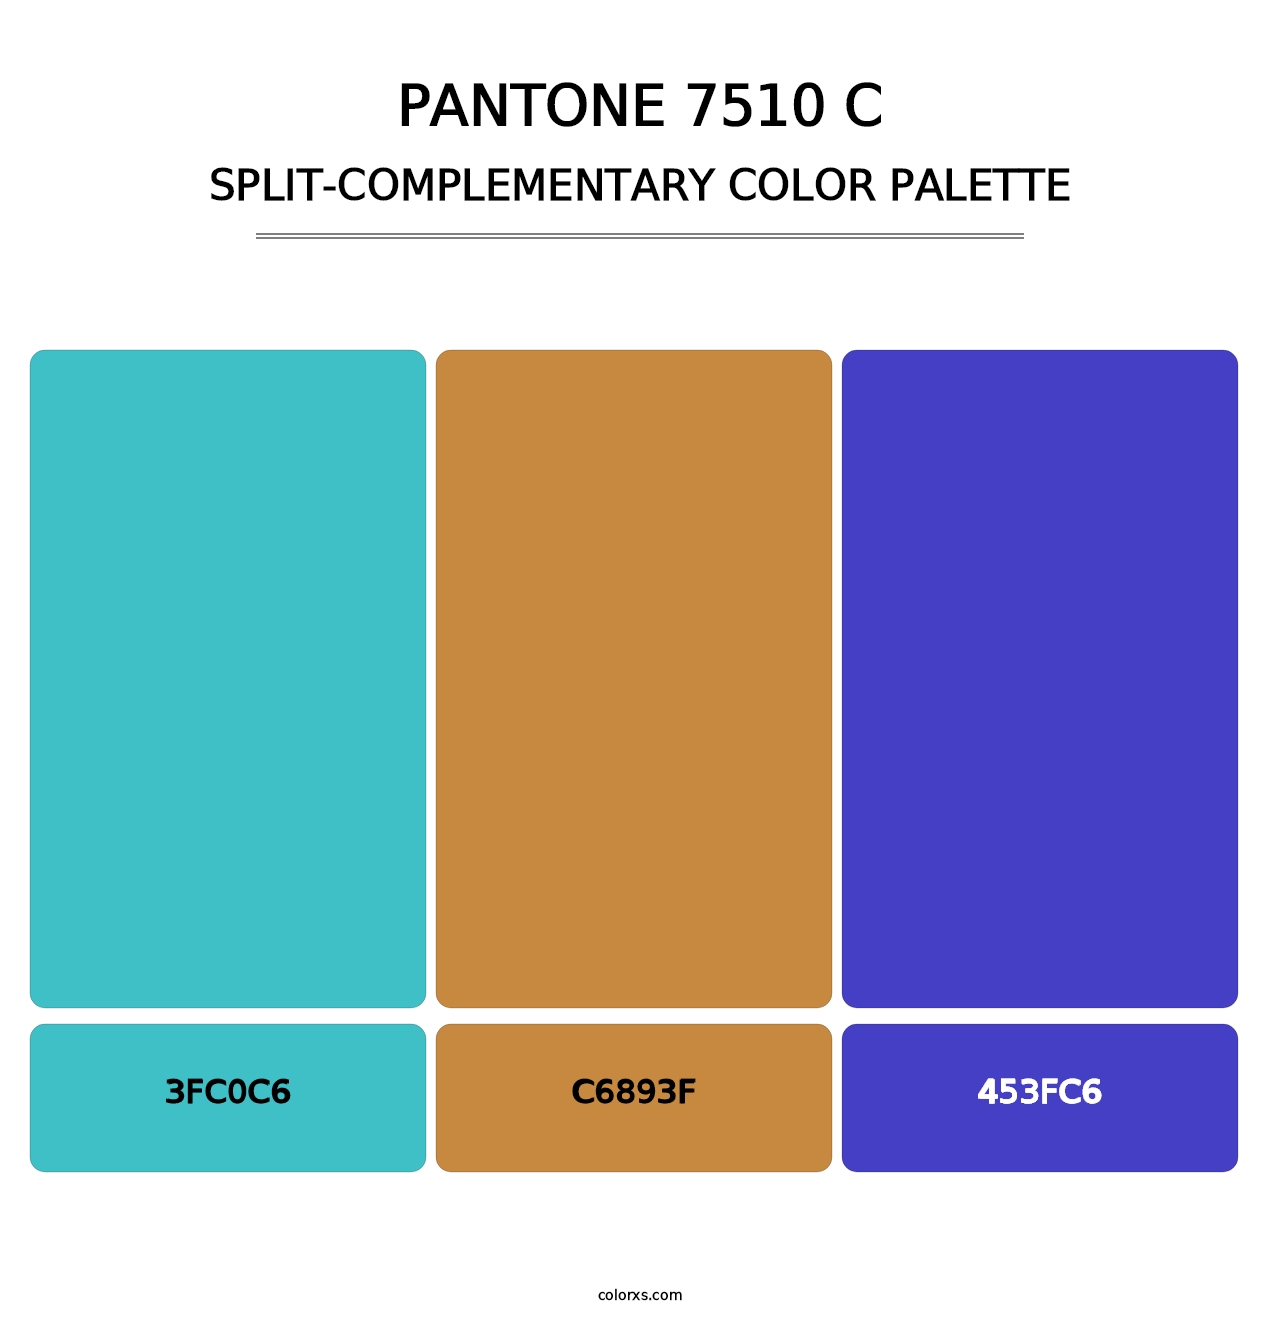 PANTONE 7510 C - Split-Complementary Color Palette